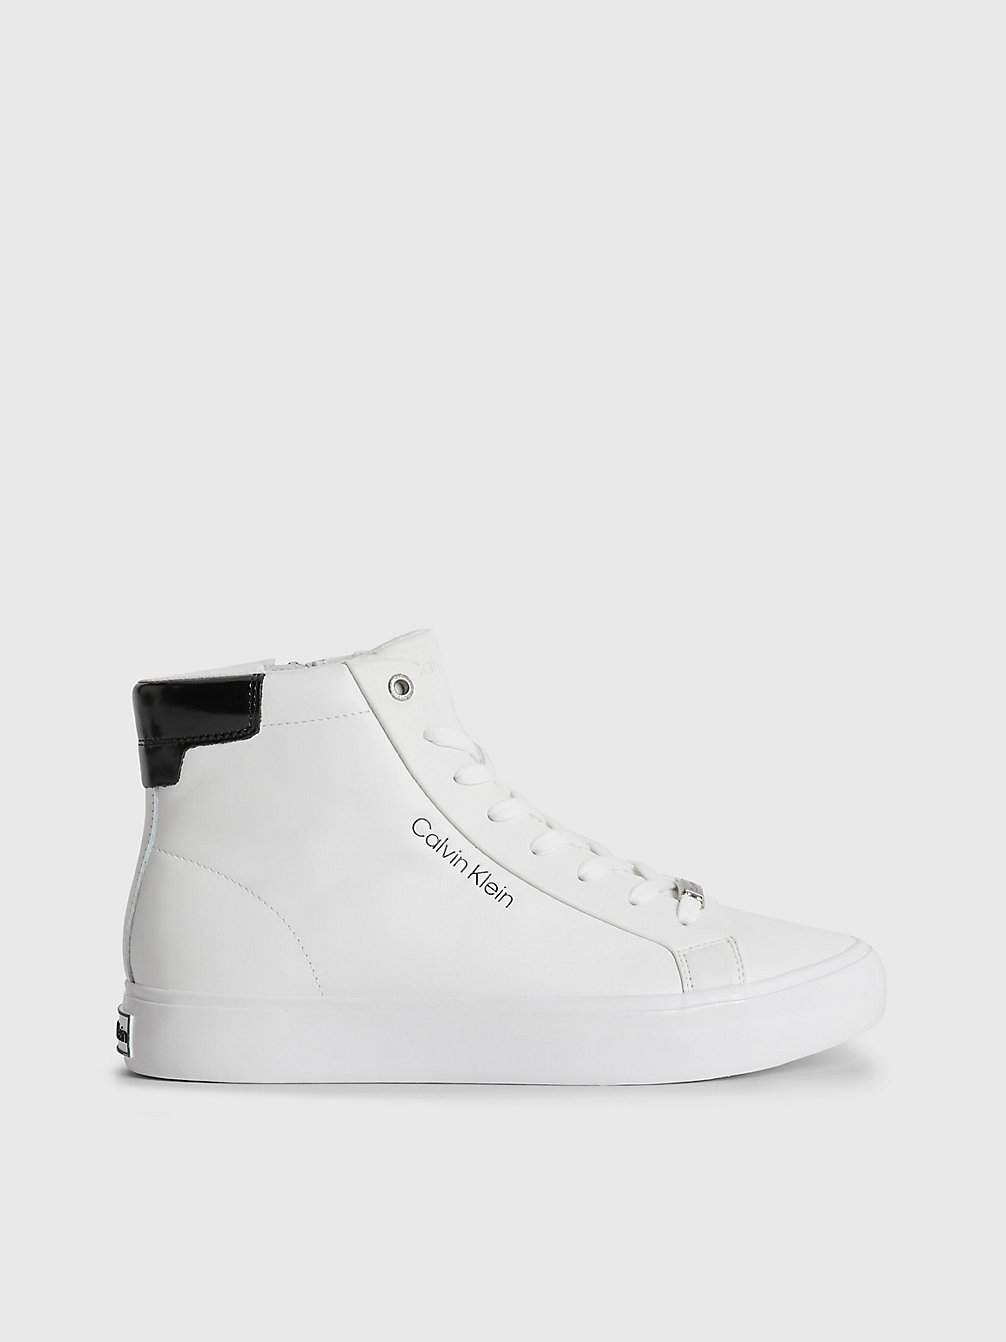 BRIGHT WHITE High Top Sneakers Aus Leder undefined Damen Calvin Klein